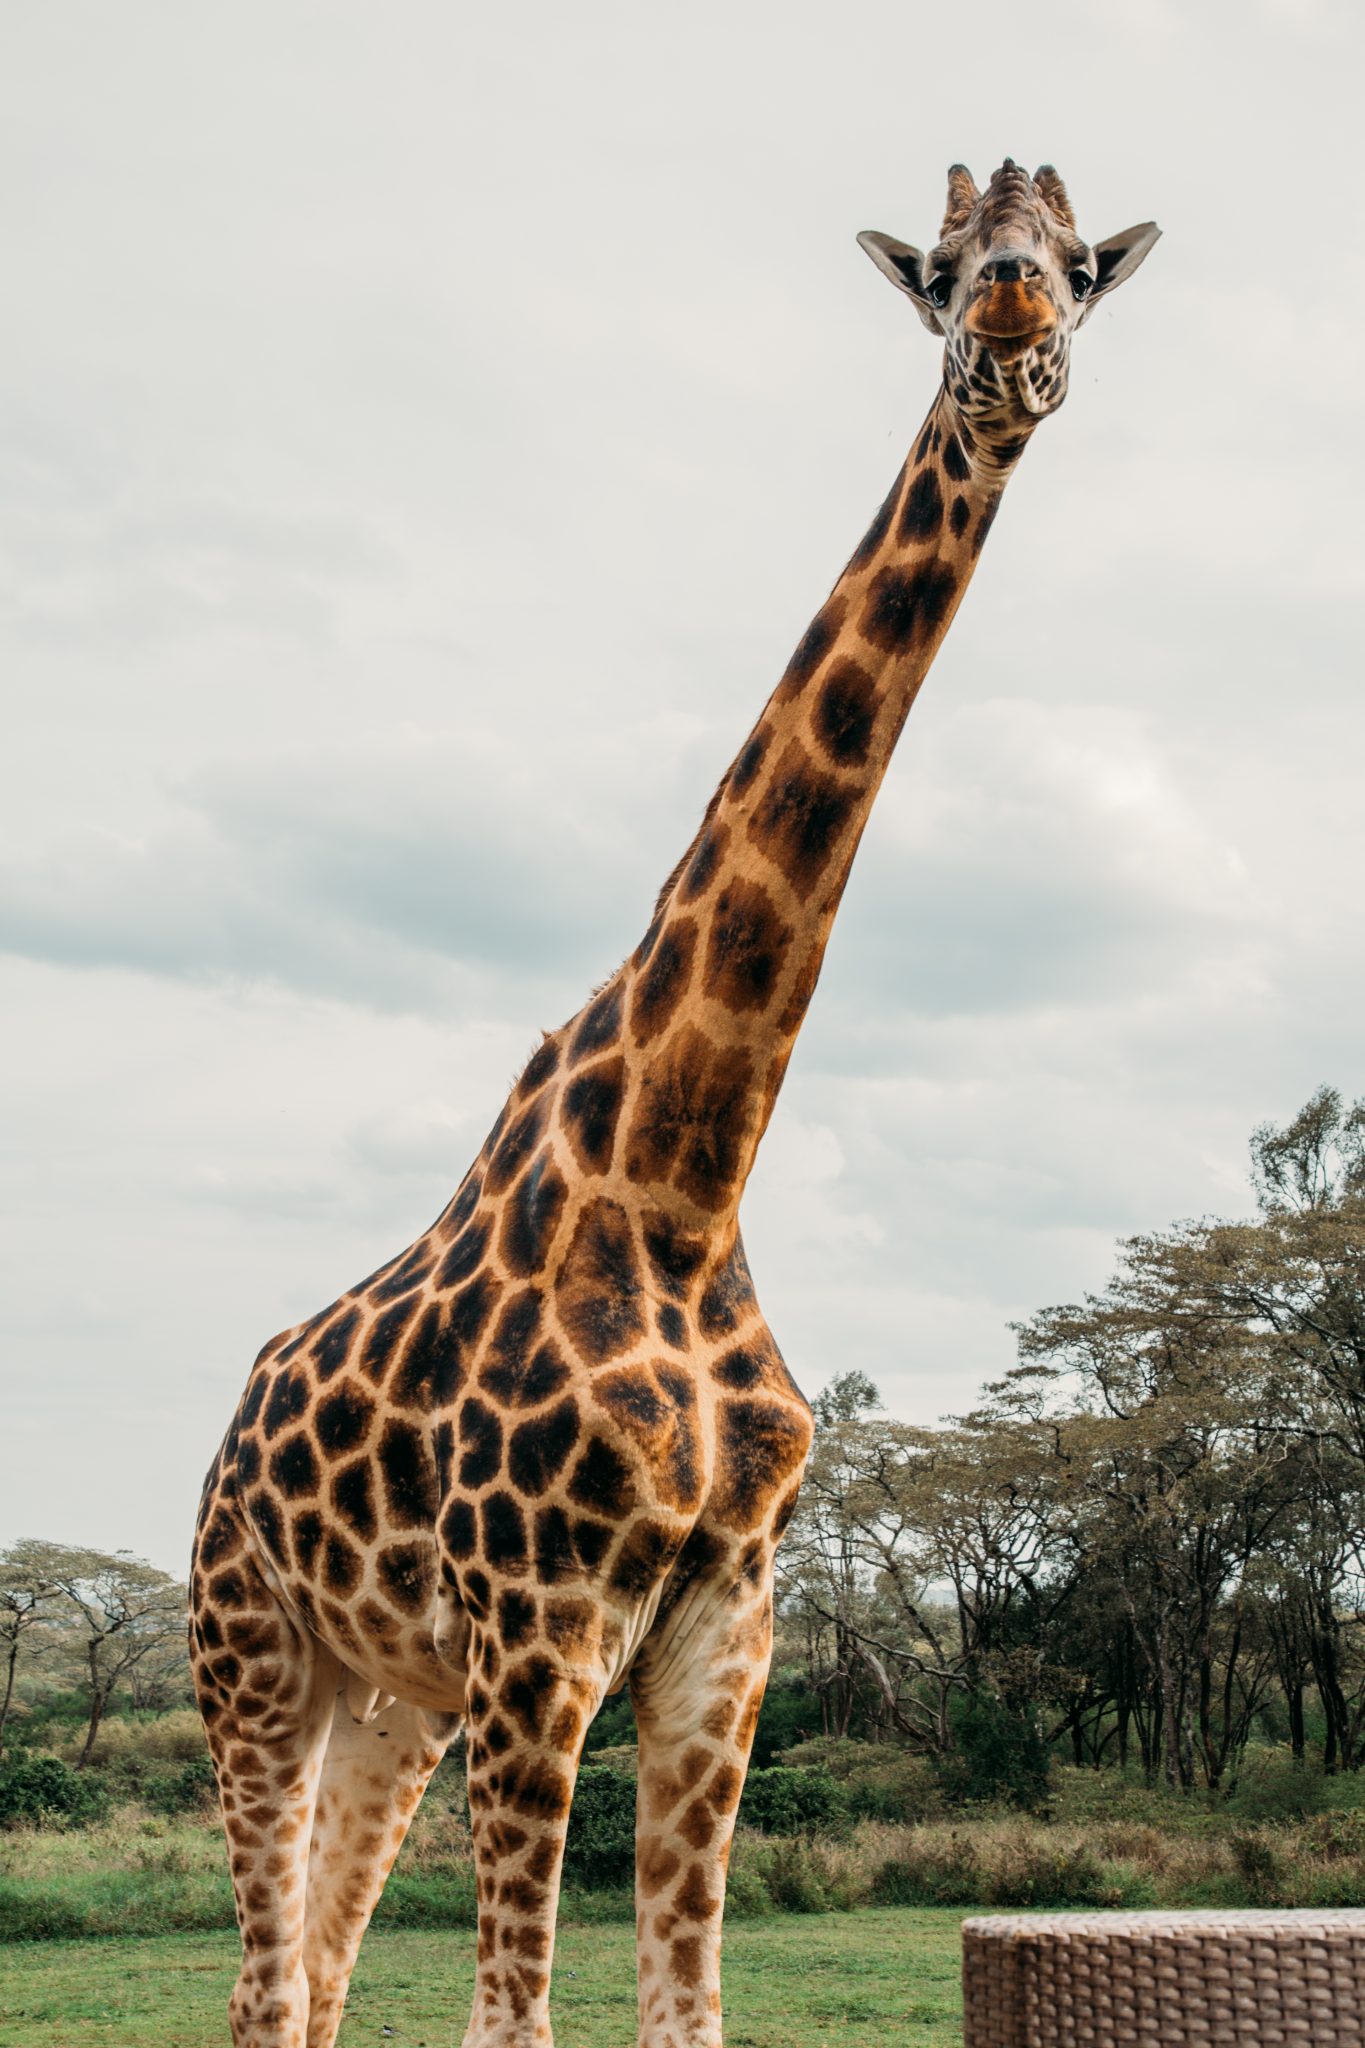 A giraffe standing next to a wicker chair.